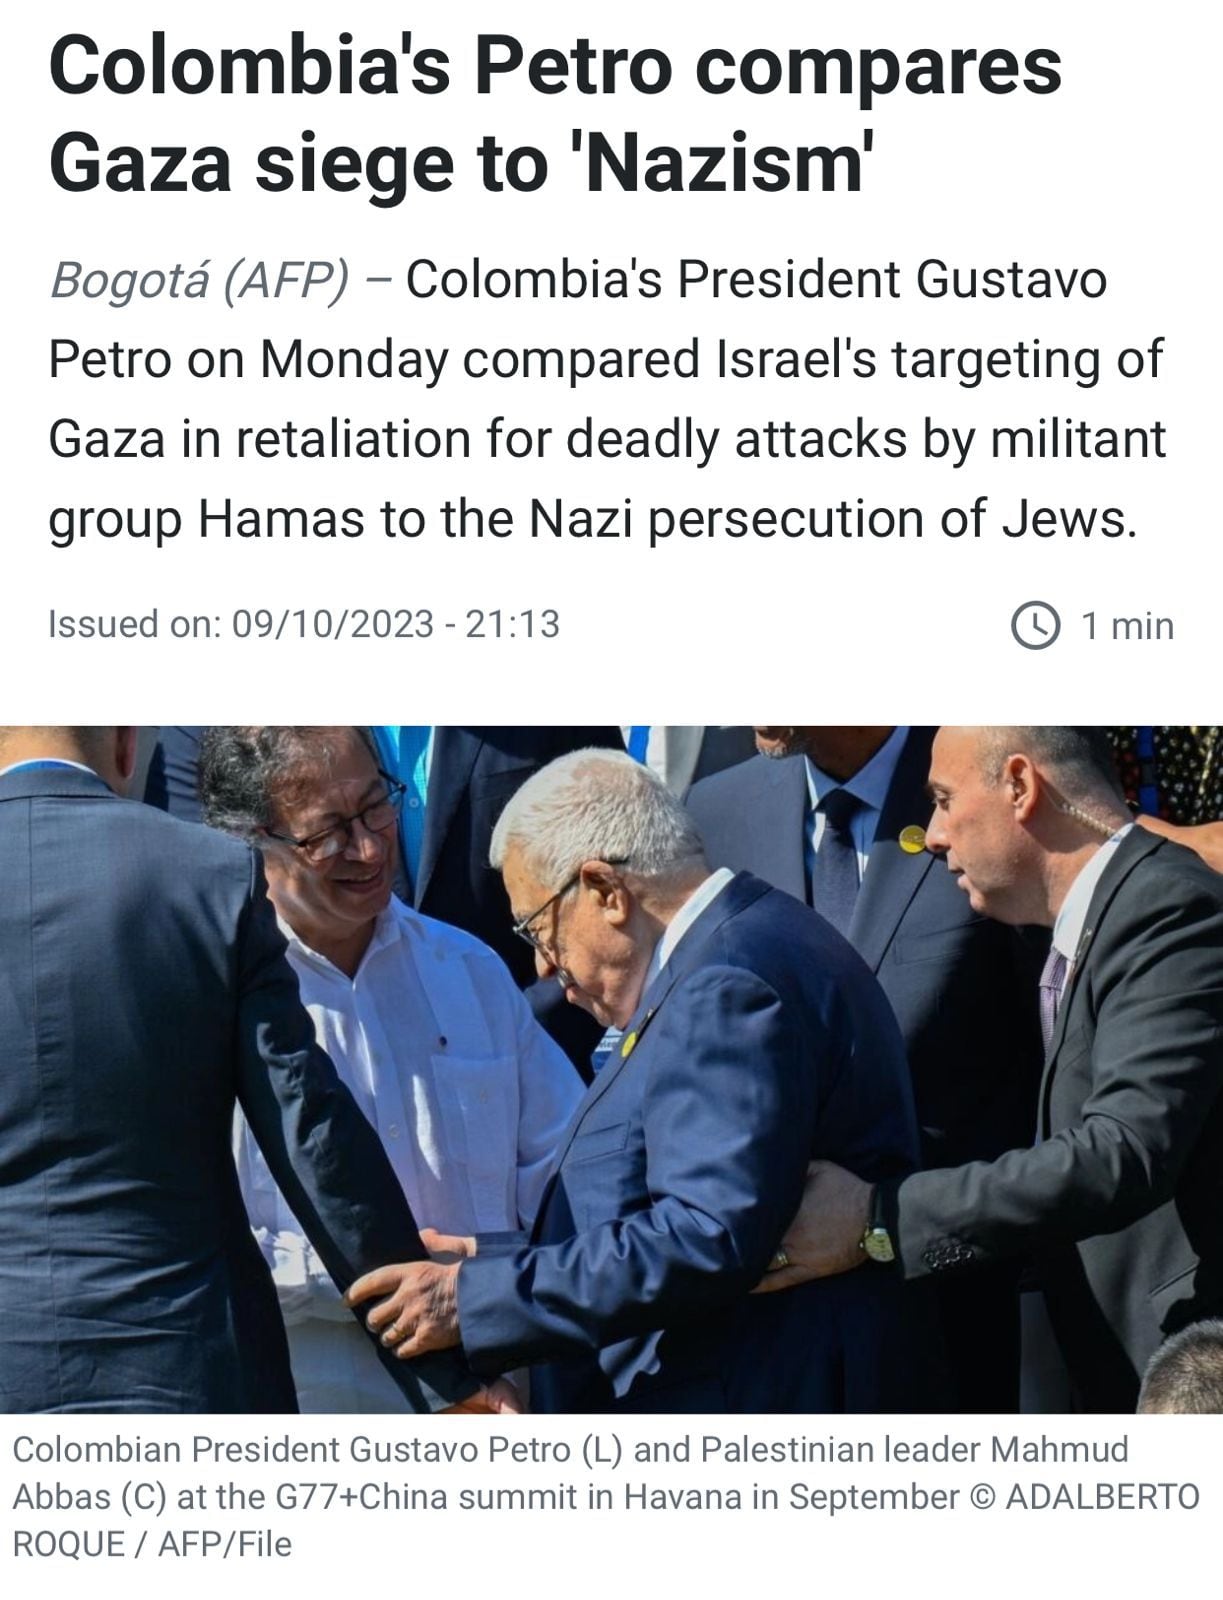 El medio que tiene sede en Bogotá hizo un recuento noticioso sobre lo ocurrido entre Petro e Israel